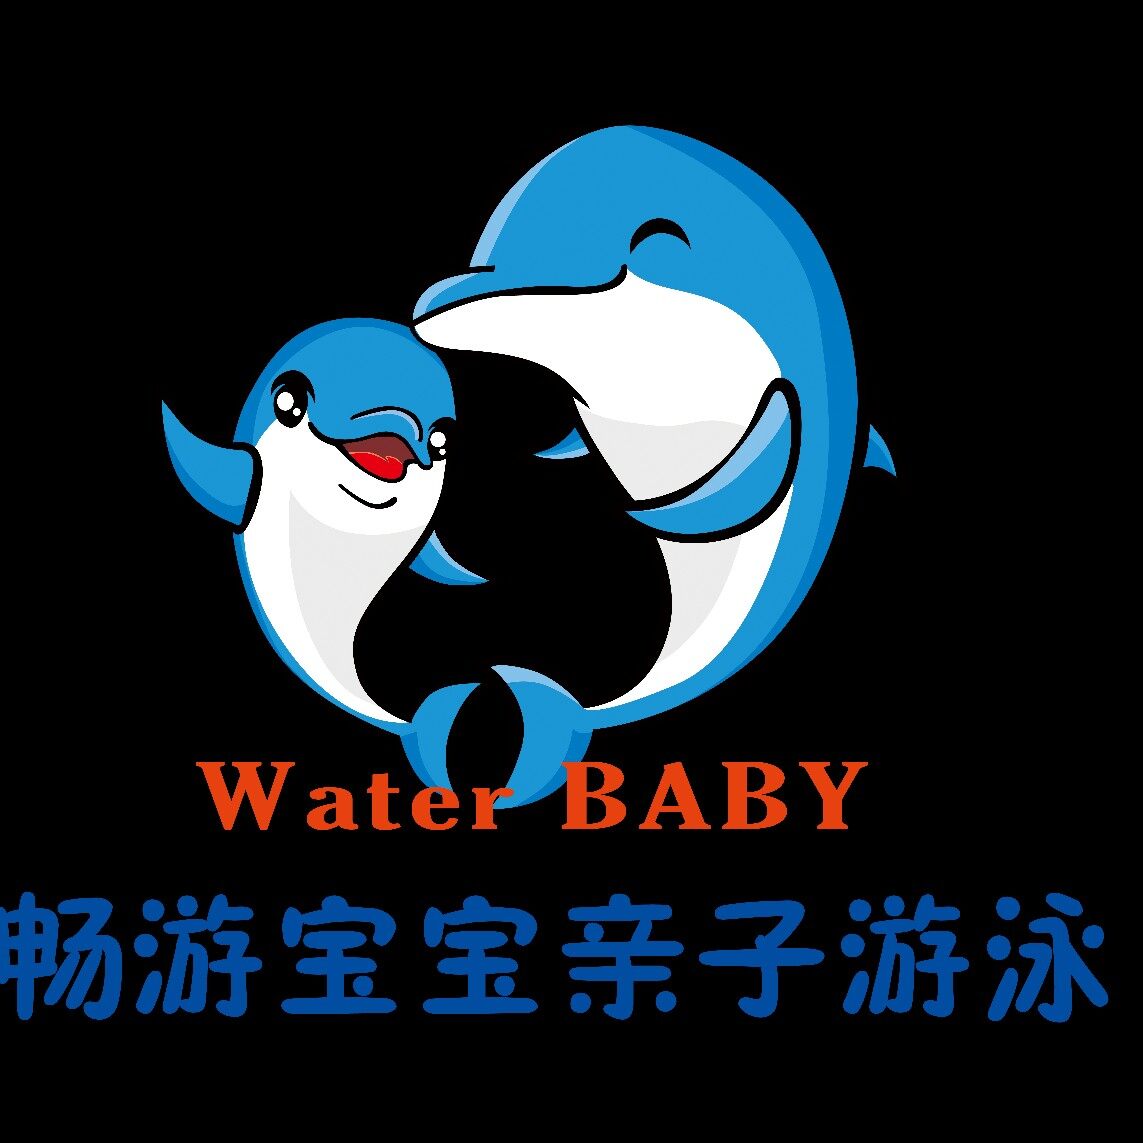 锦州畅游宝宝教育信息咨询有限公司logo